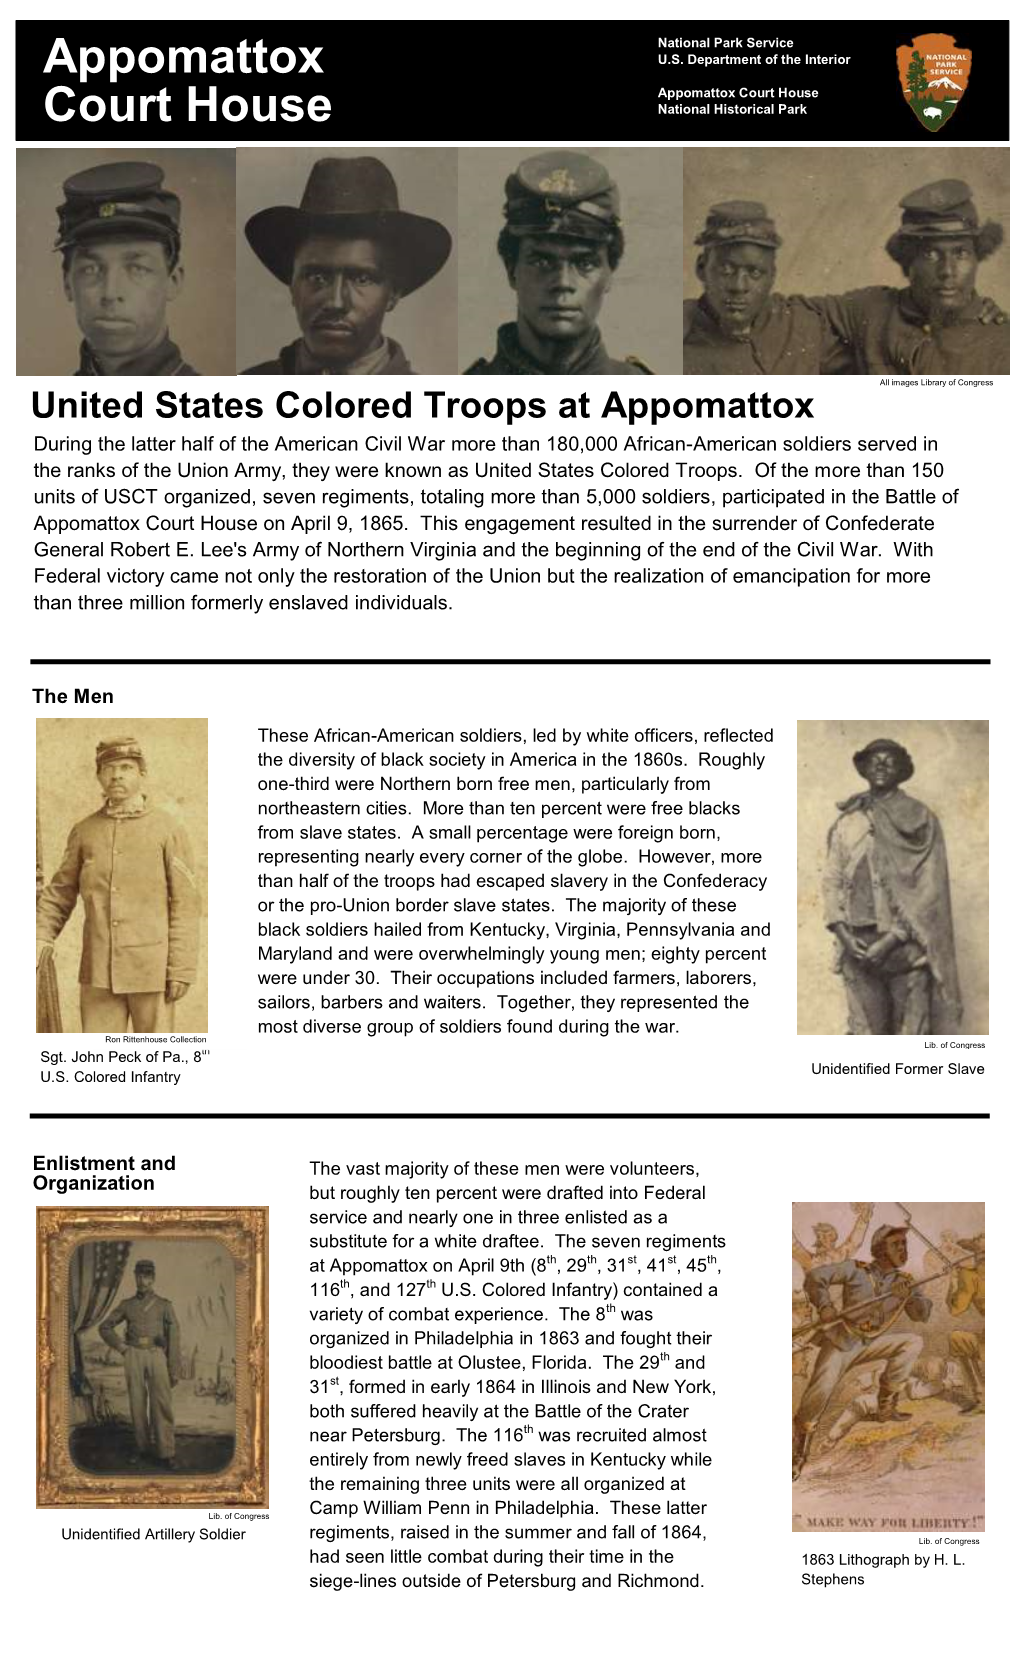 Unitedd States Colored Troops at Appomattox